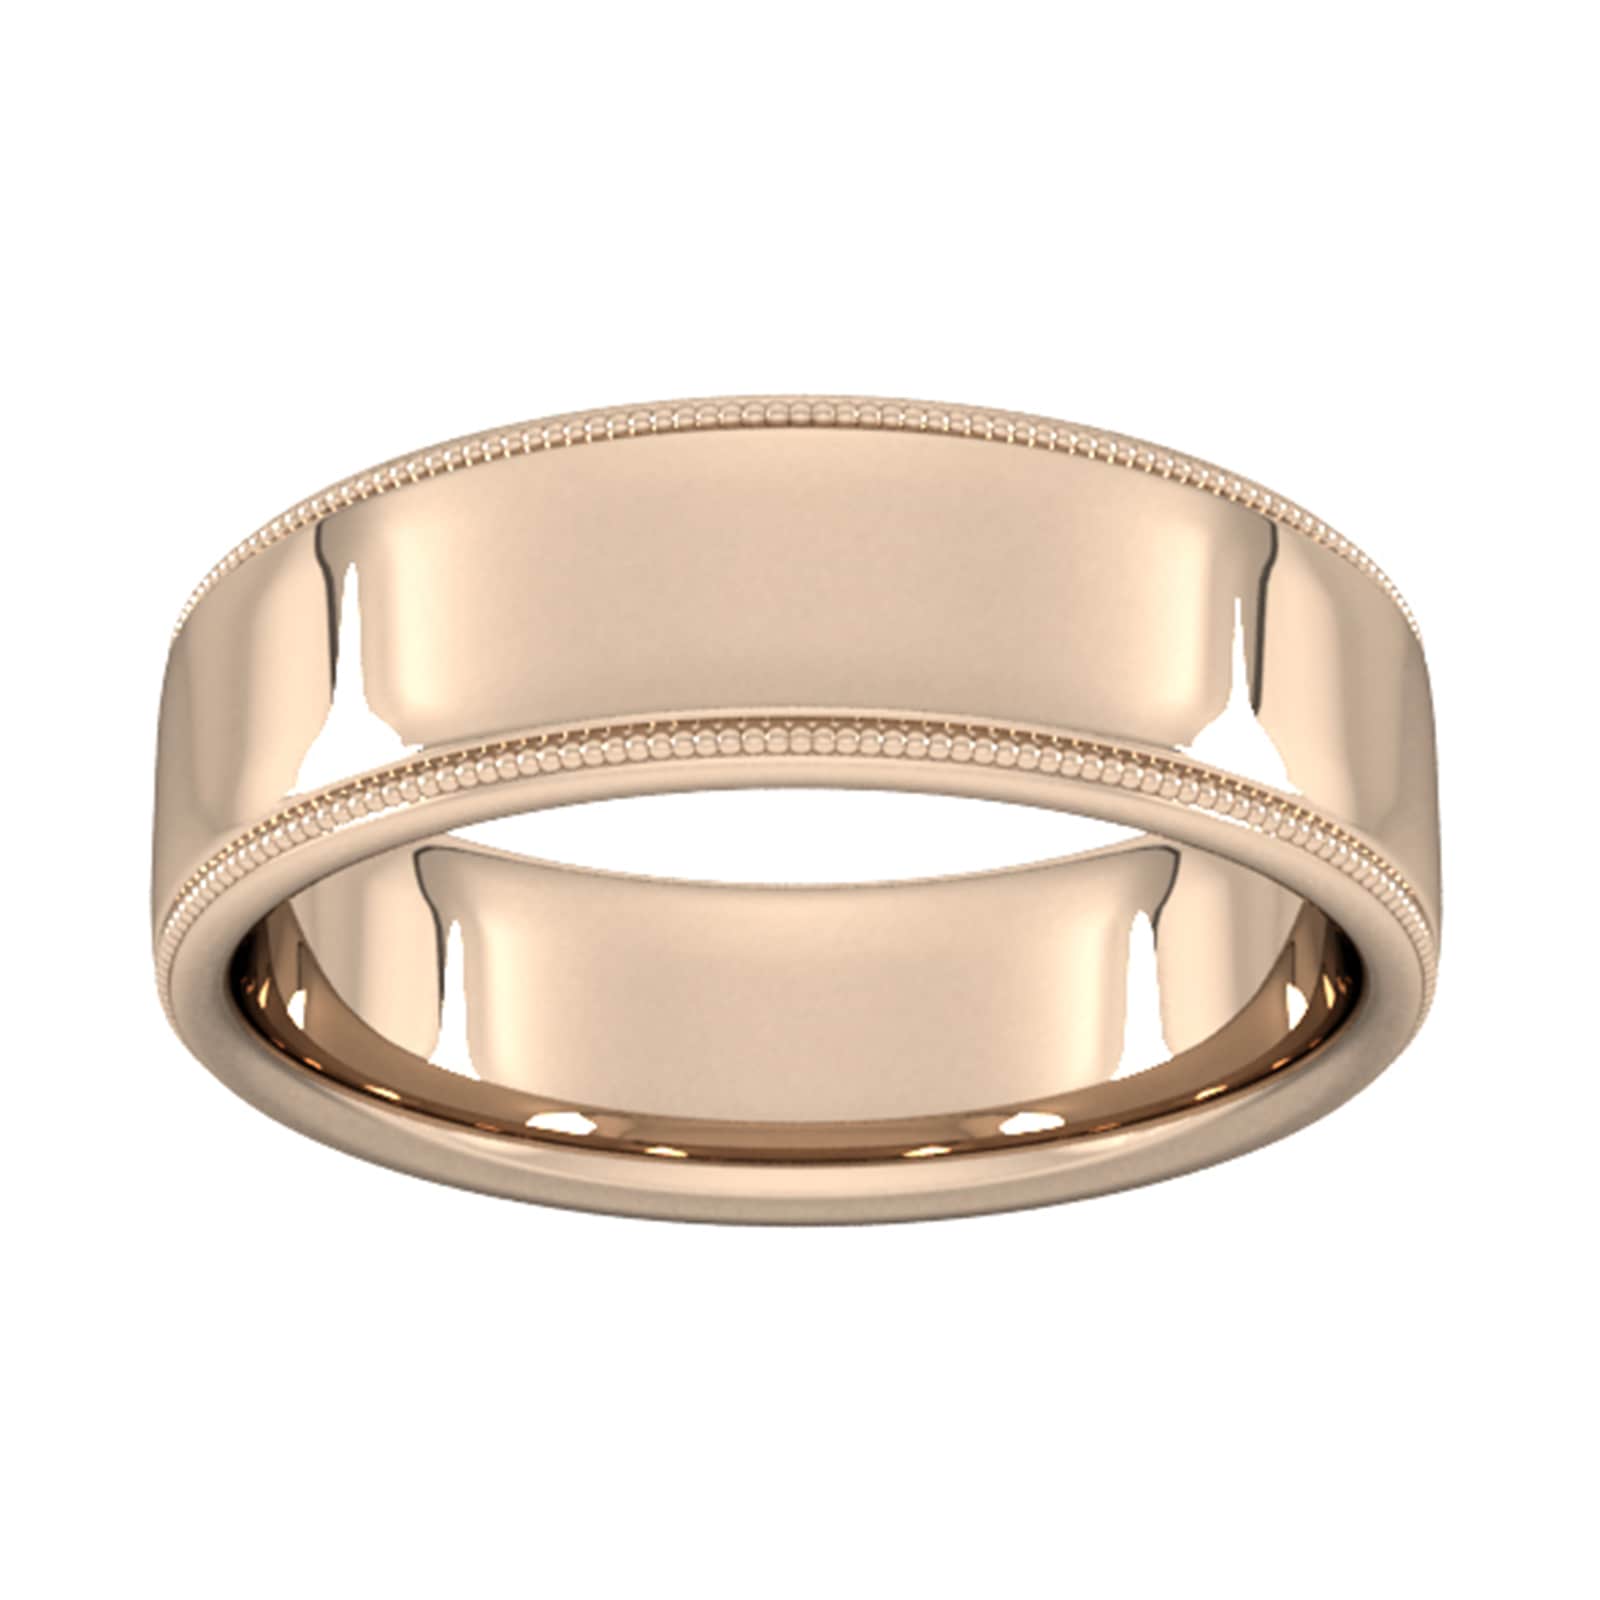 7mm Slight Court Standard Milgrain Edge Wedding Ring In 18 Carat Rose Gold - Ring Size M